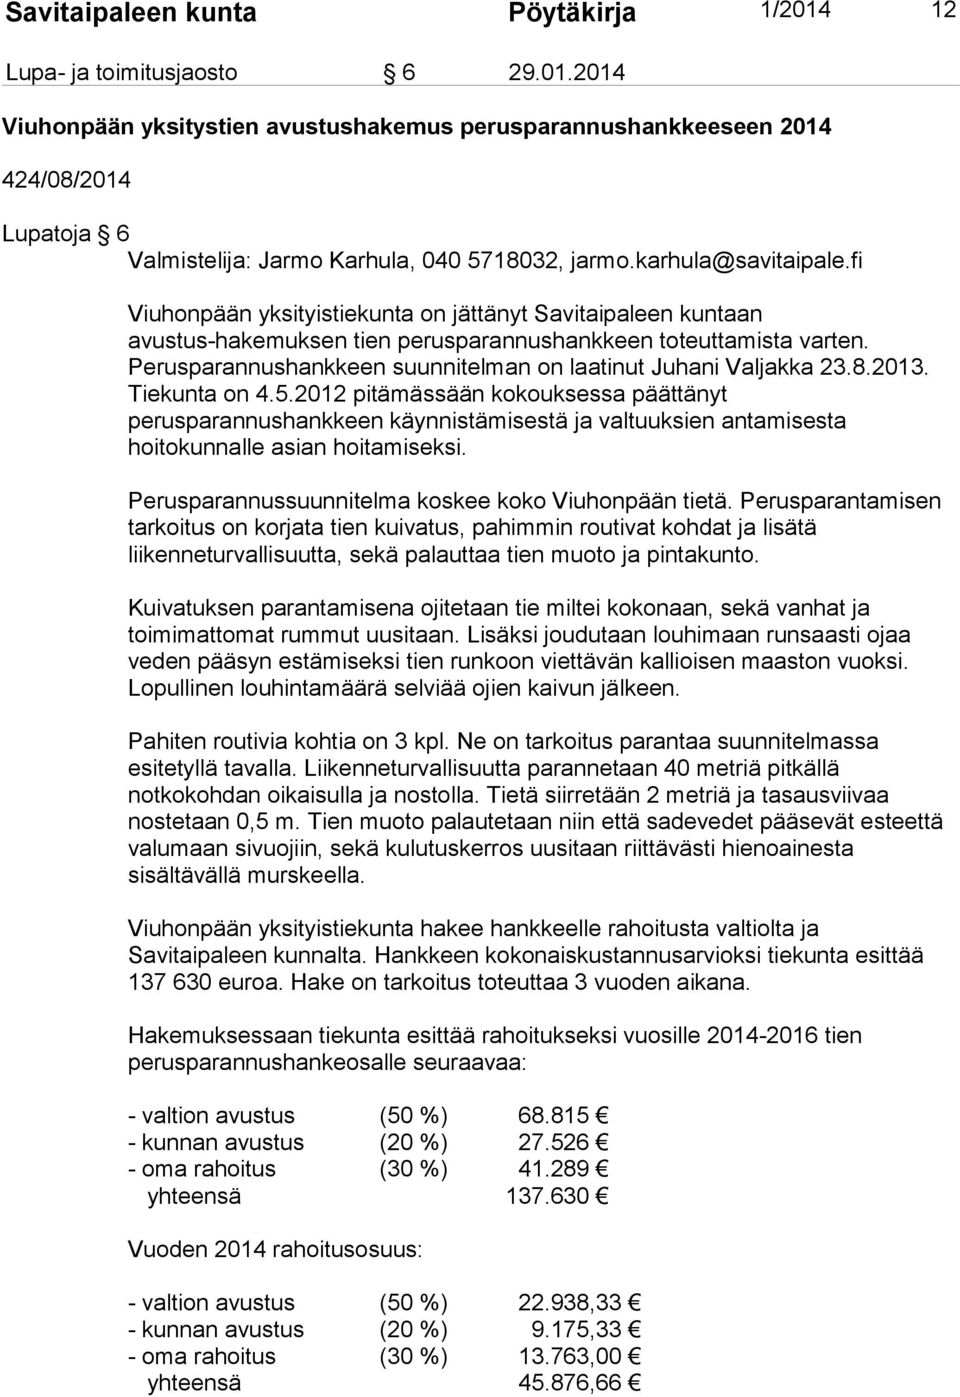 2014 Viuhonpään yksitystien avustushakemus perusparannushankkeeseen 2014 424/08/2014 Lupatoja 6 Viuhonpään yksityistiekunta on jättänyt Savitaipaleen kuntaan avustus-hakemuksen tien